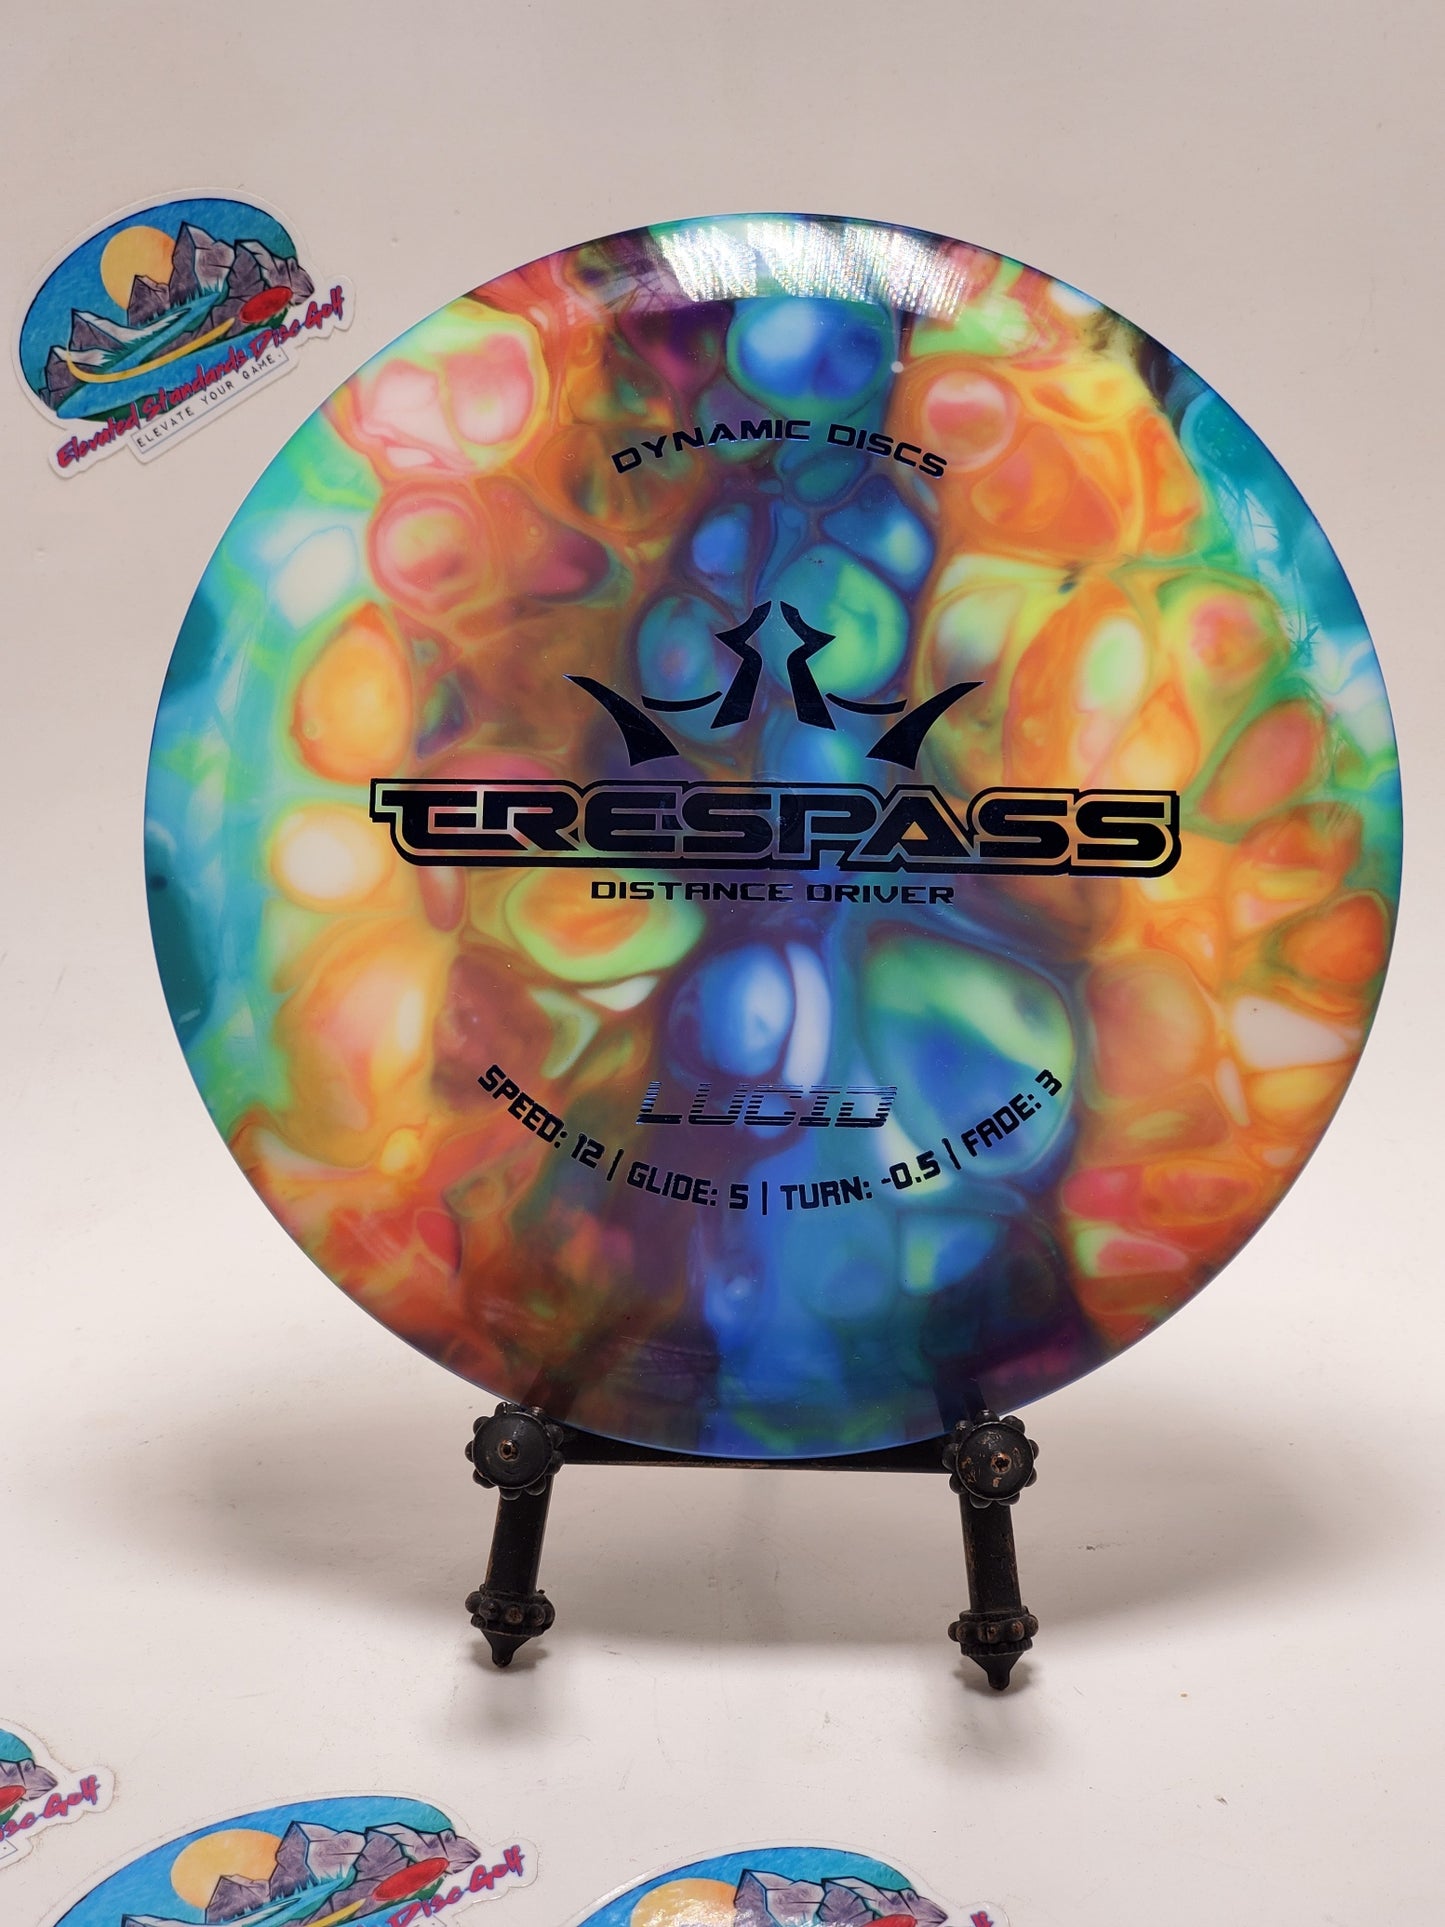 Dynamic Discs Trespass